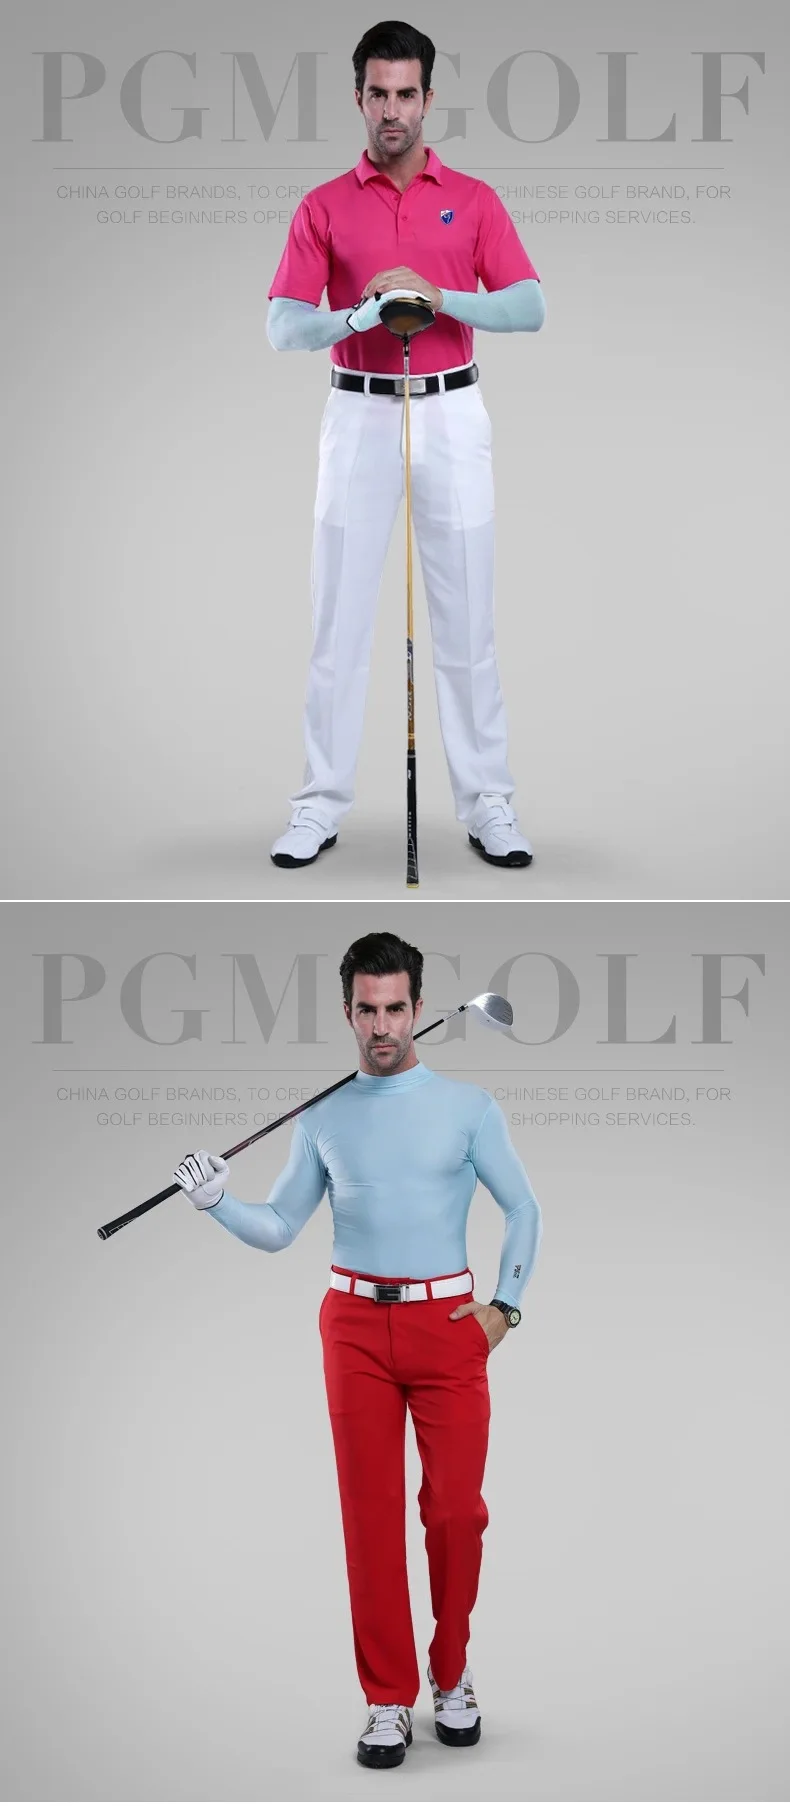 PGM футболки для гольфа тонкая спортивная рубашка с длинными рукавами Мужская одежда для гольфа майка для гольфа одежда для гольфа для мужчин размер m-xxl